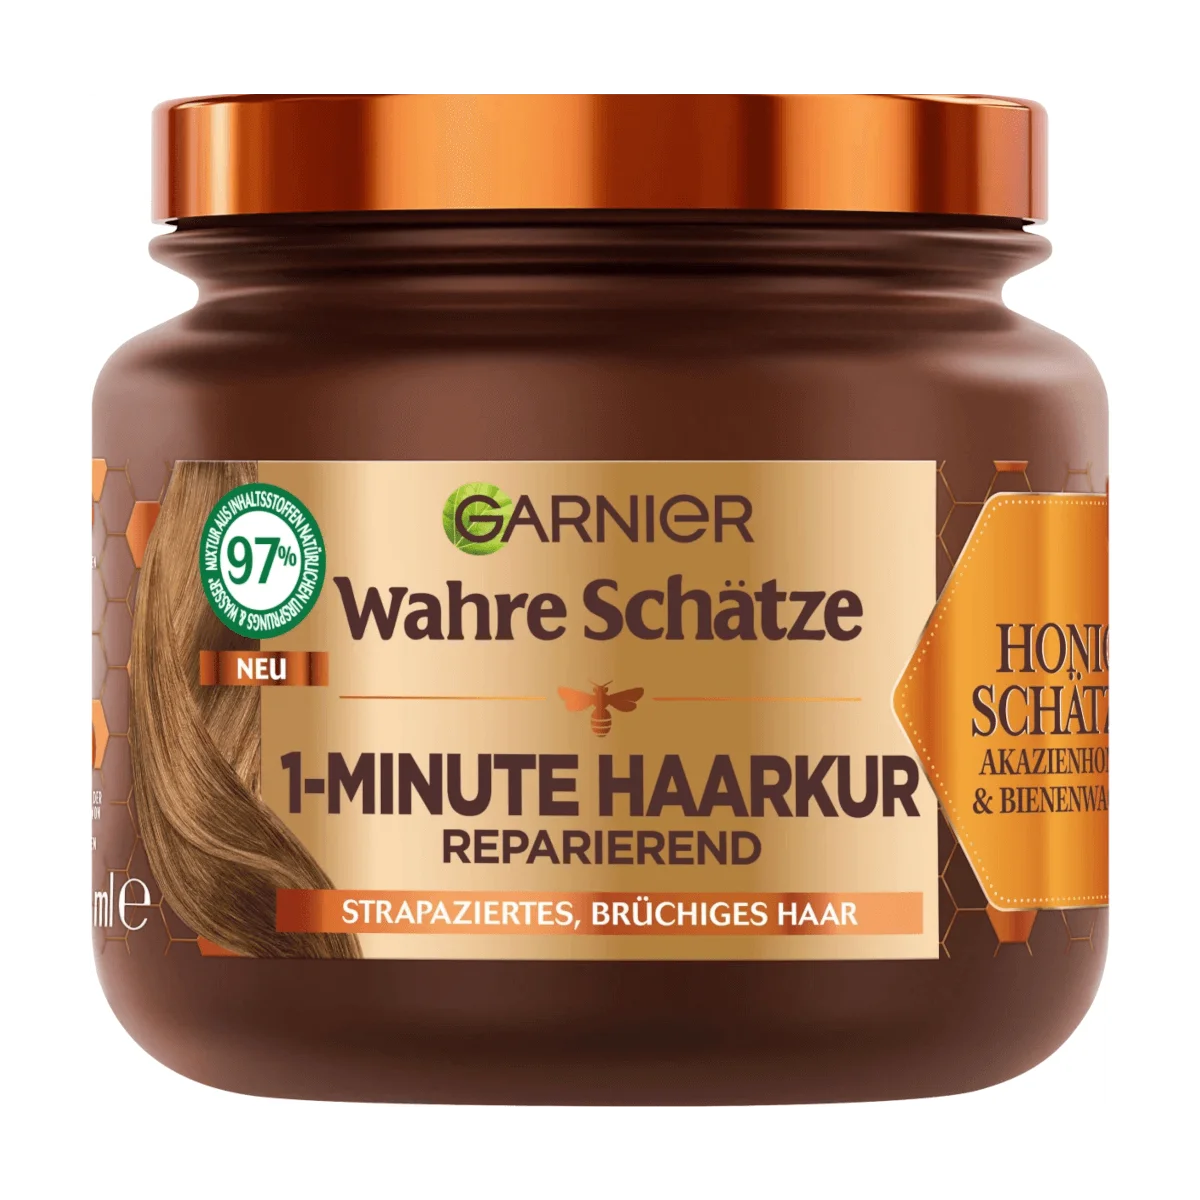 Garnier Wahre Schätze Haarkur 1-Minute Honig Schätze, 340 ml